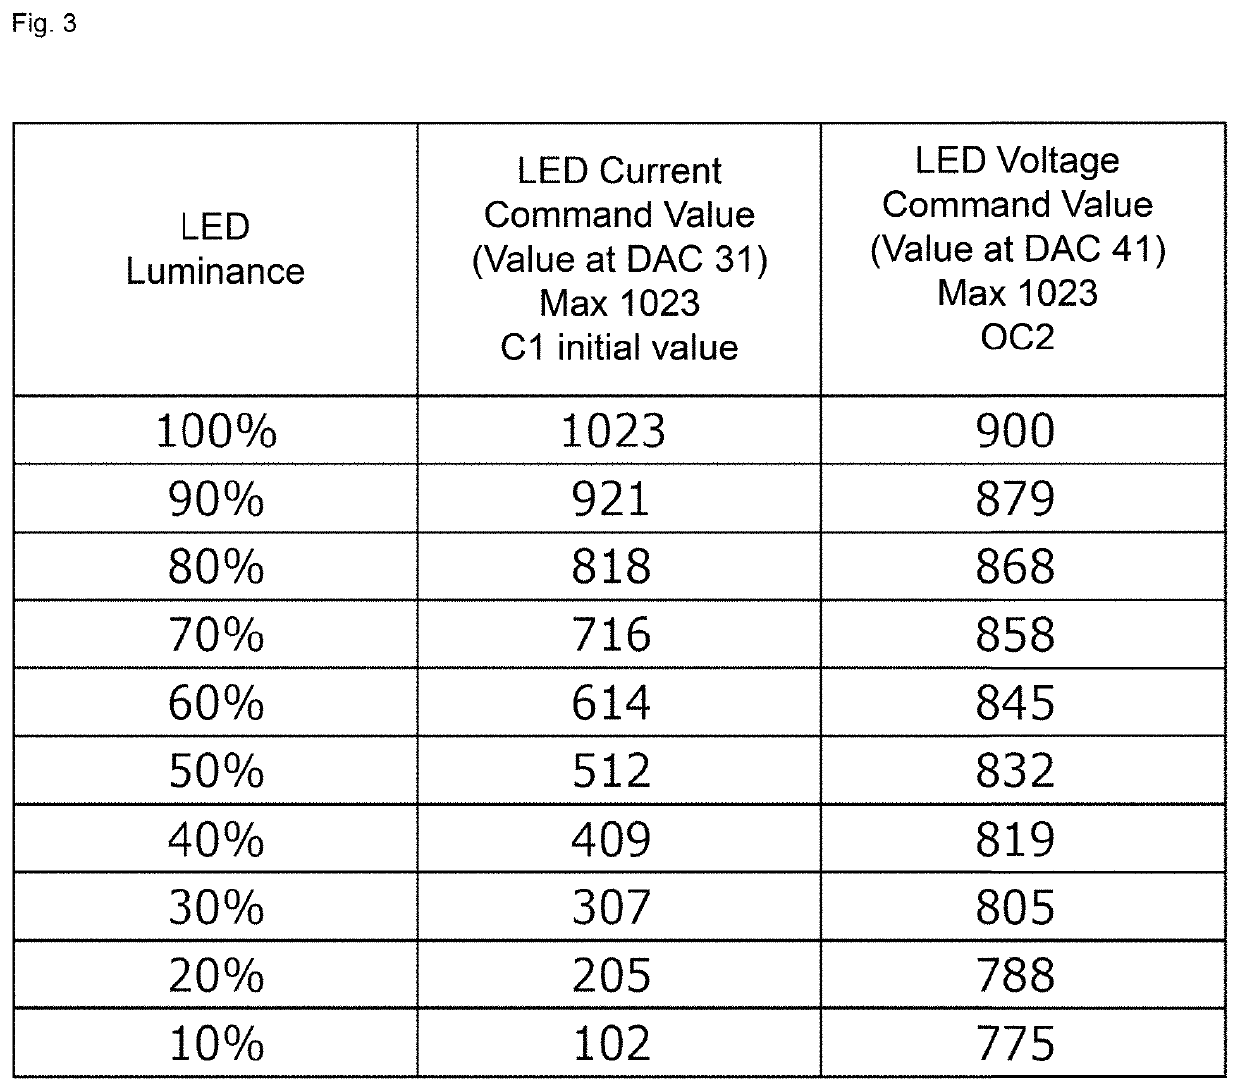 LED luminance control circuit, LED luminance control method, and LED luminance control program